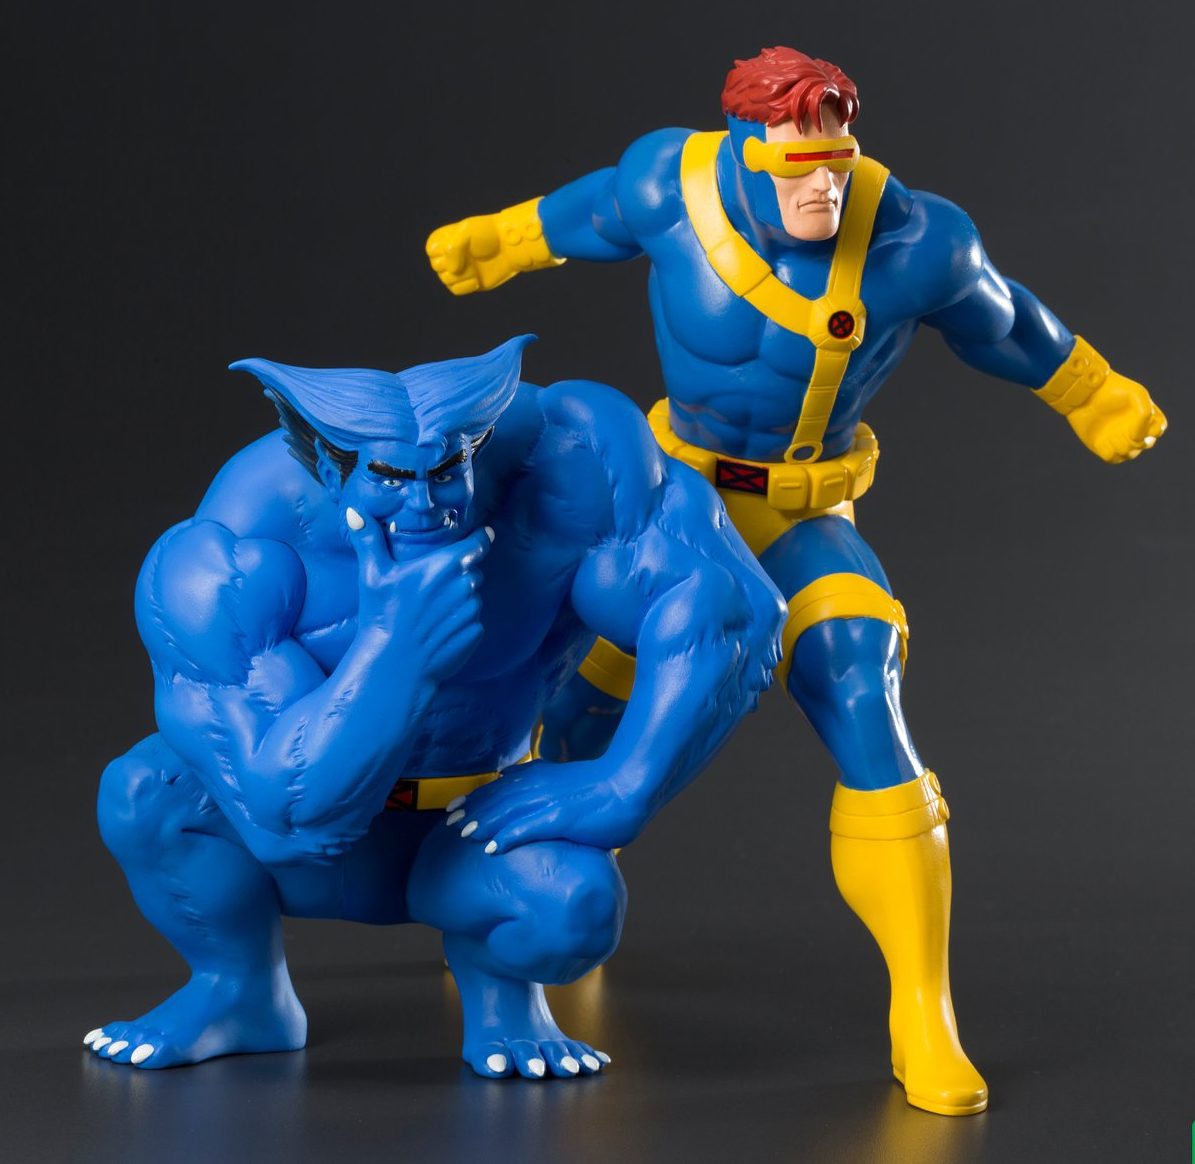 Kotobukiya ARTFX+ Iron Fist, 90s X-Men Cyclops & Beast Statues! - Marvel  Toy News